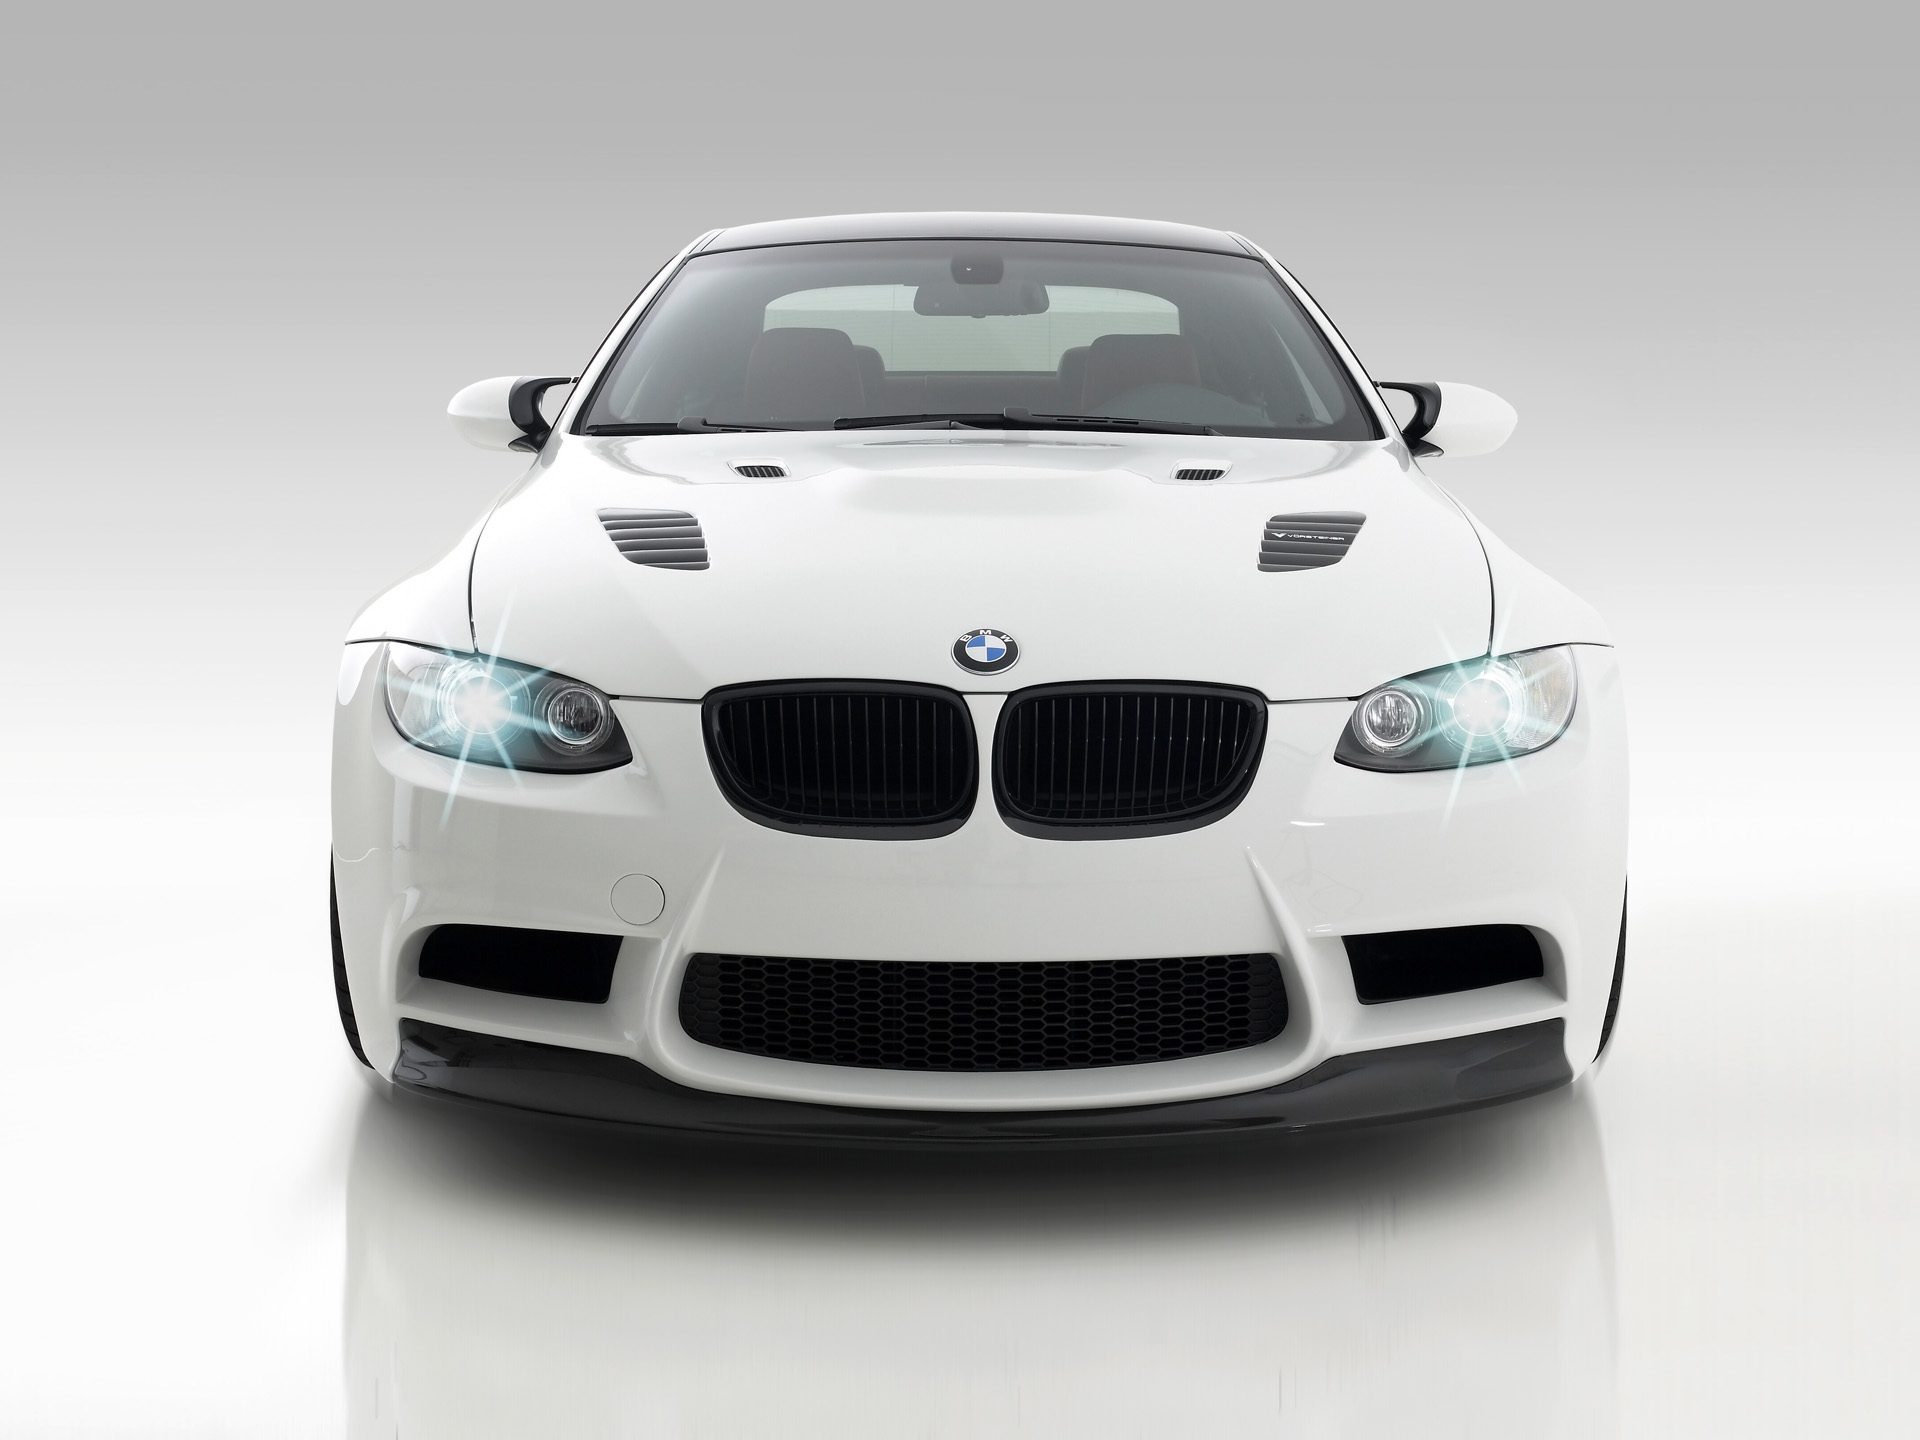 white BMW wallpapers, обои для рабочего стола бэха, скачать бесплатно, белая БМВ, car wallpaper, машины